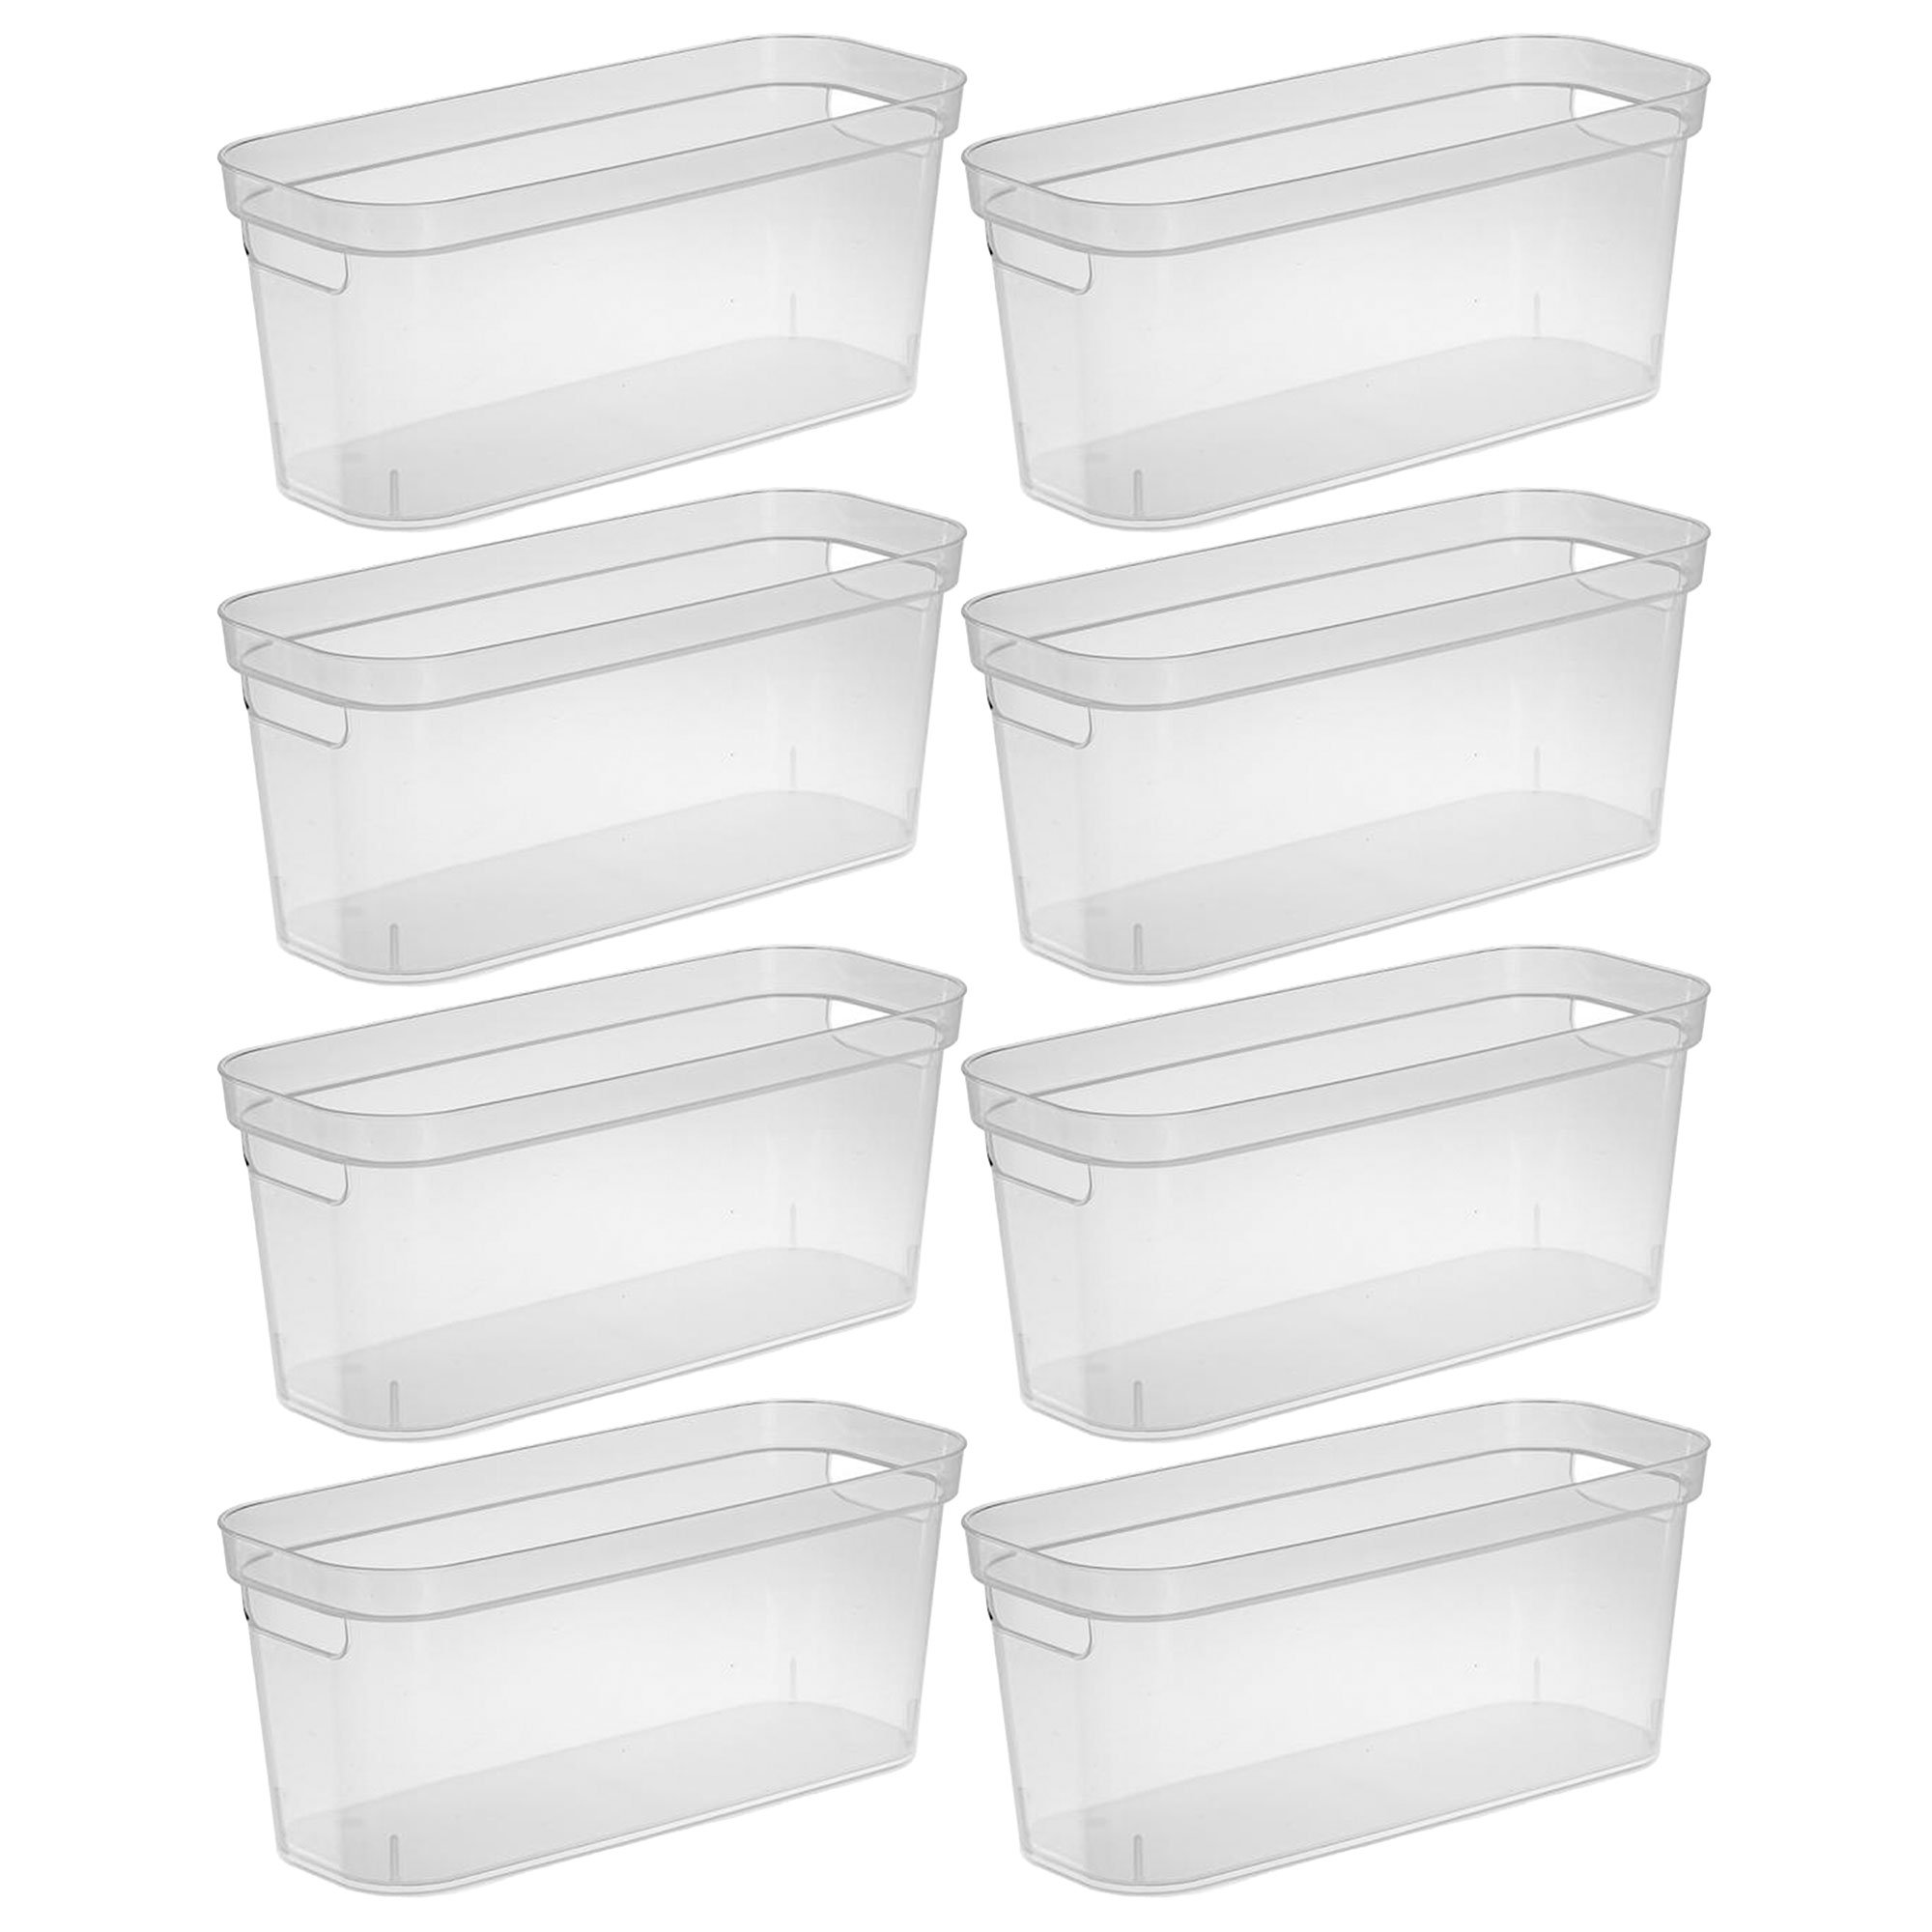 Sterilite Tall Storage Bin Plastic, Clear, Set of 6 